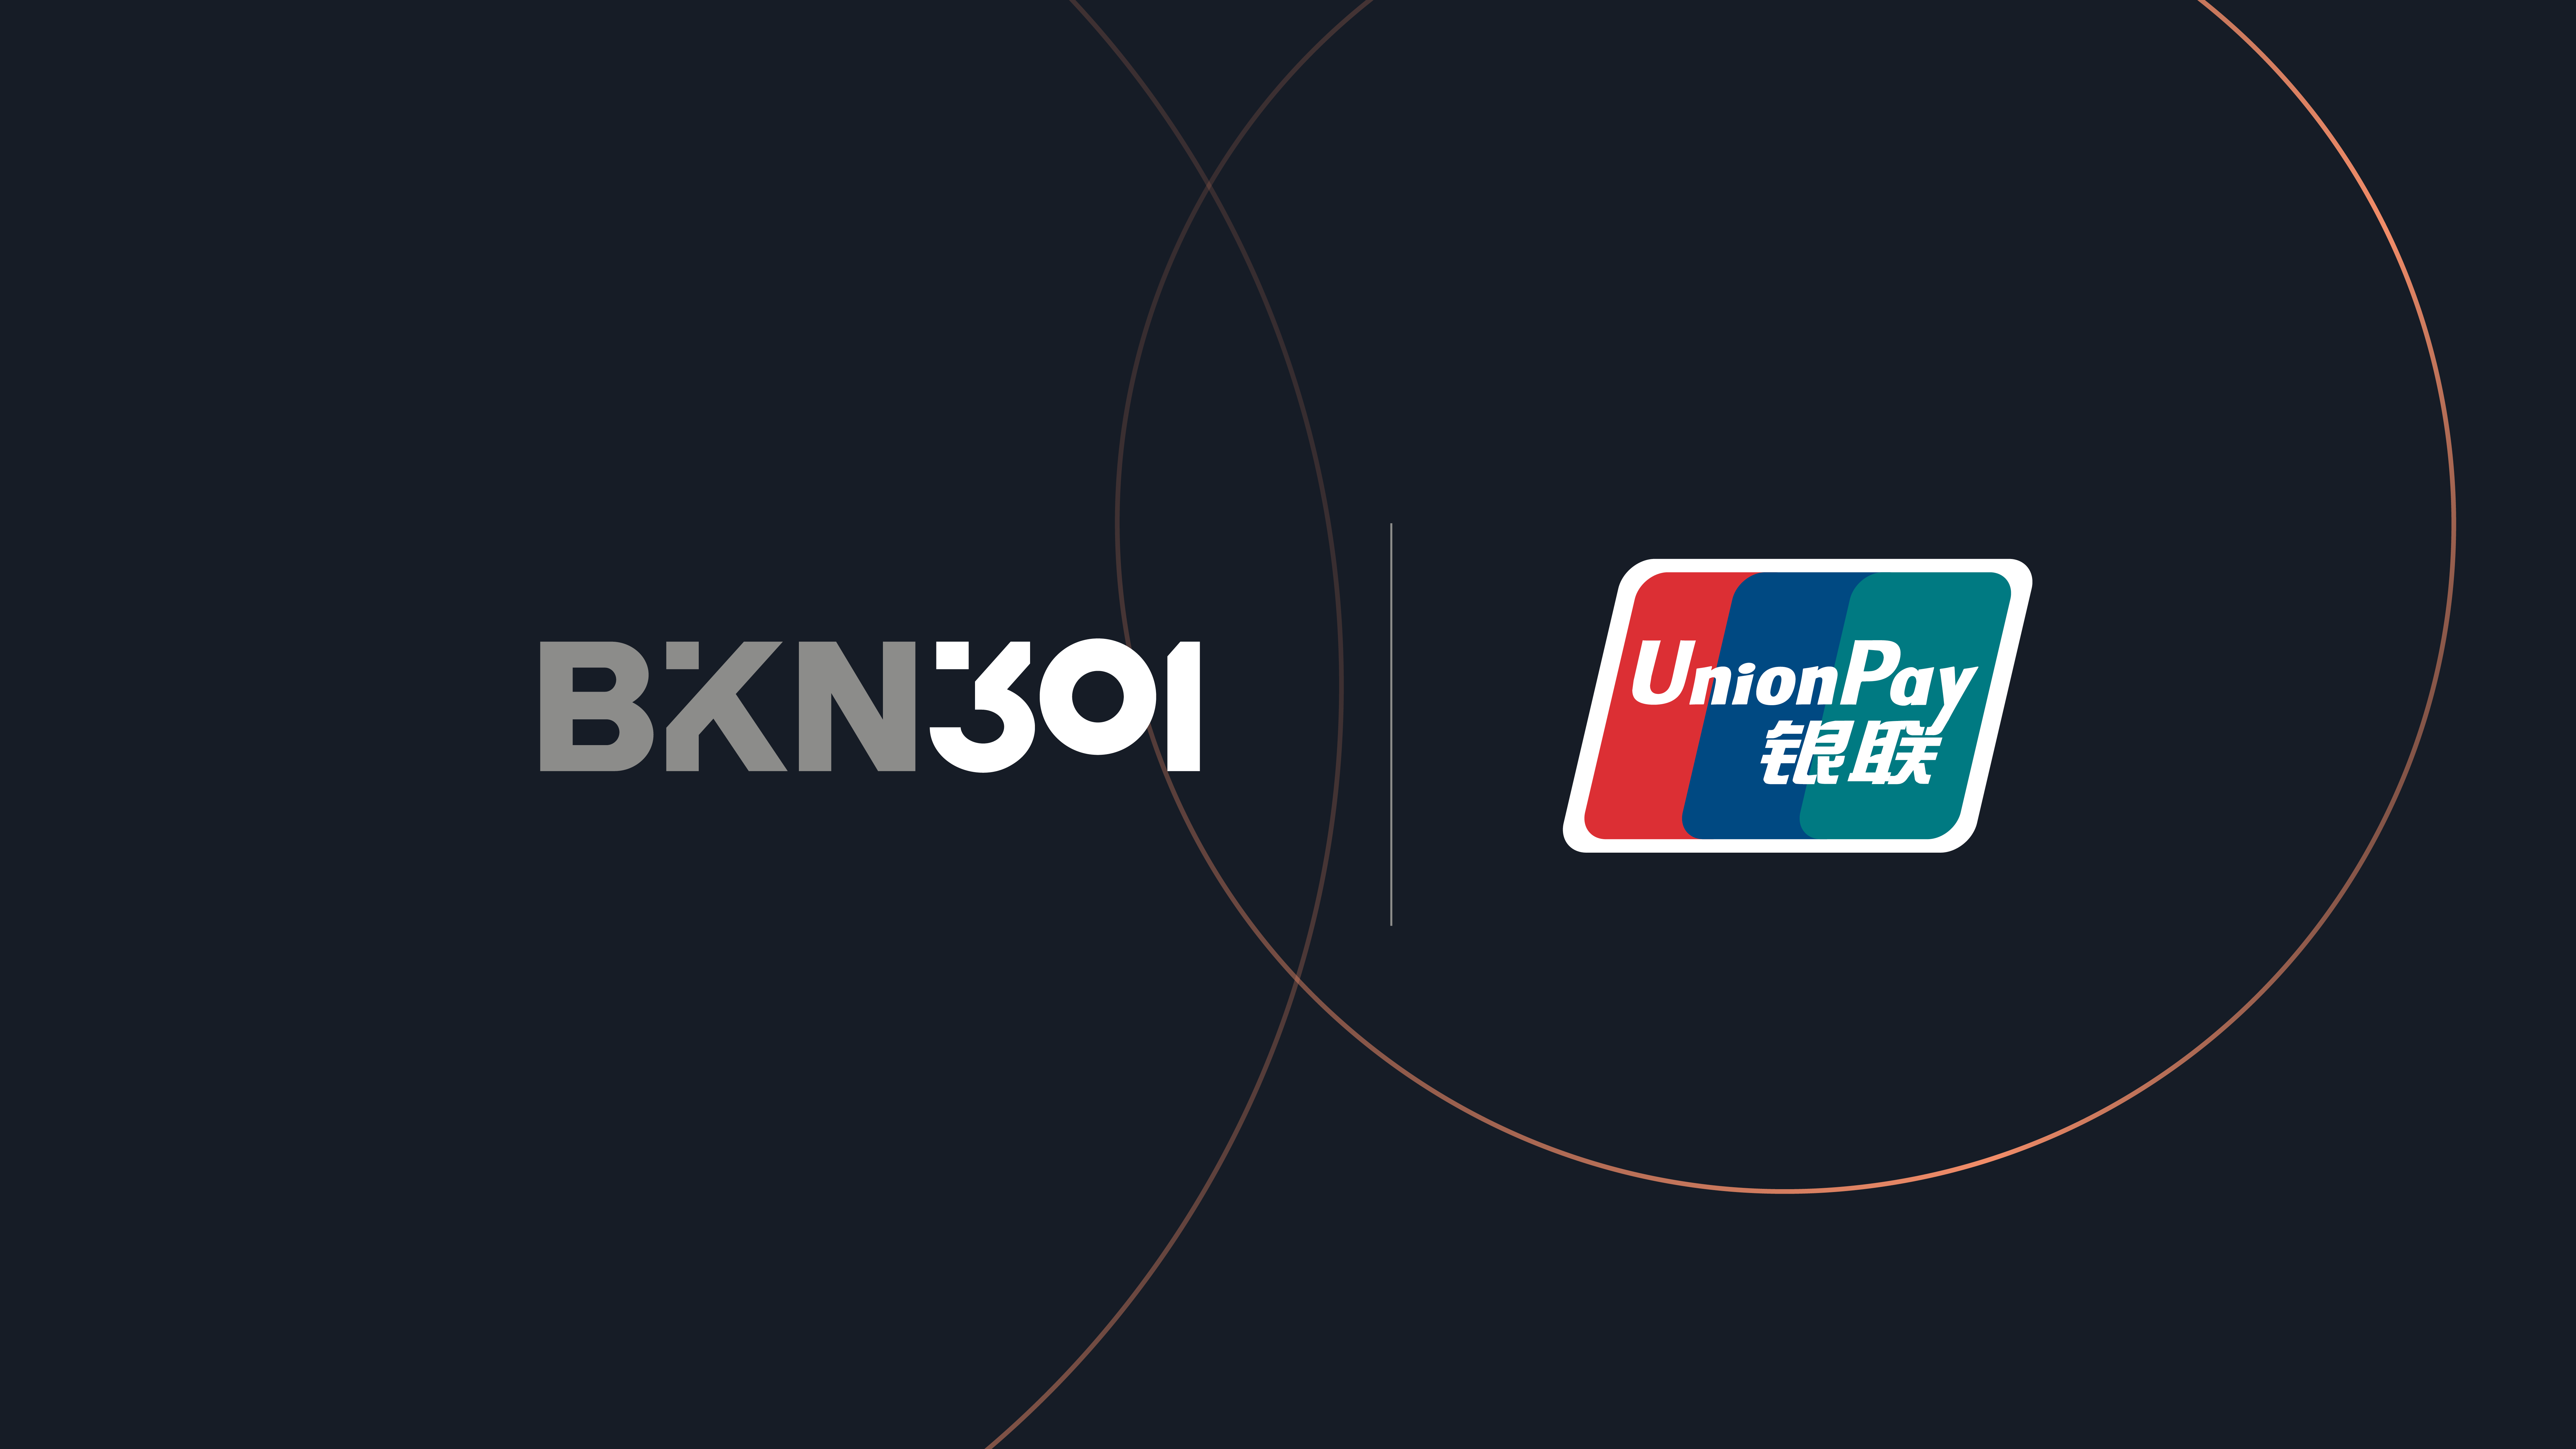 San Marino. BKN301 entra nel circuito UnionPay: nuove opportunità di business si aprono sui mercati internazionali